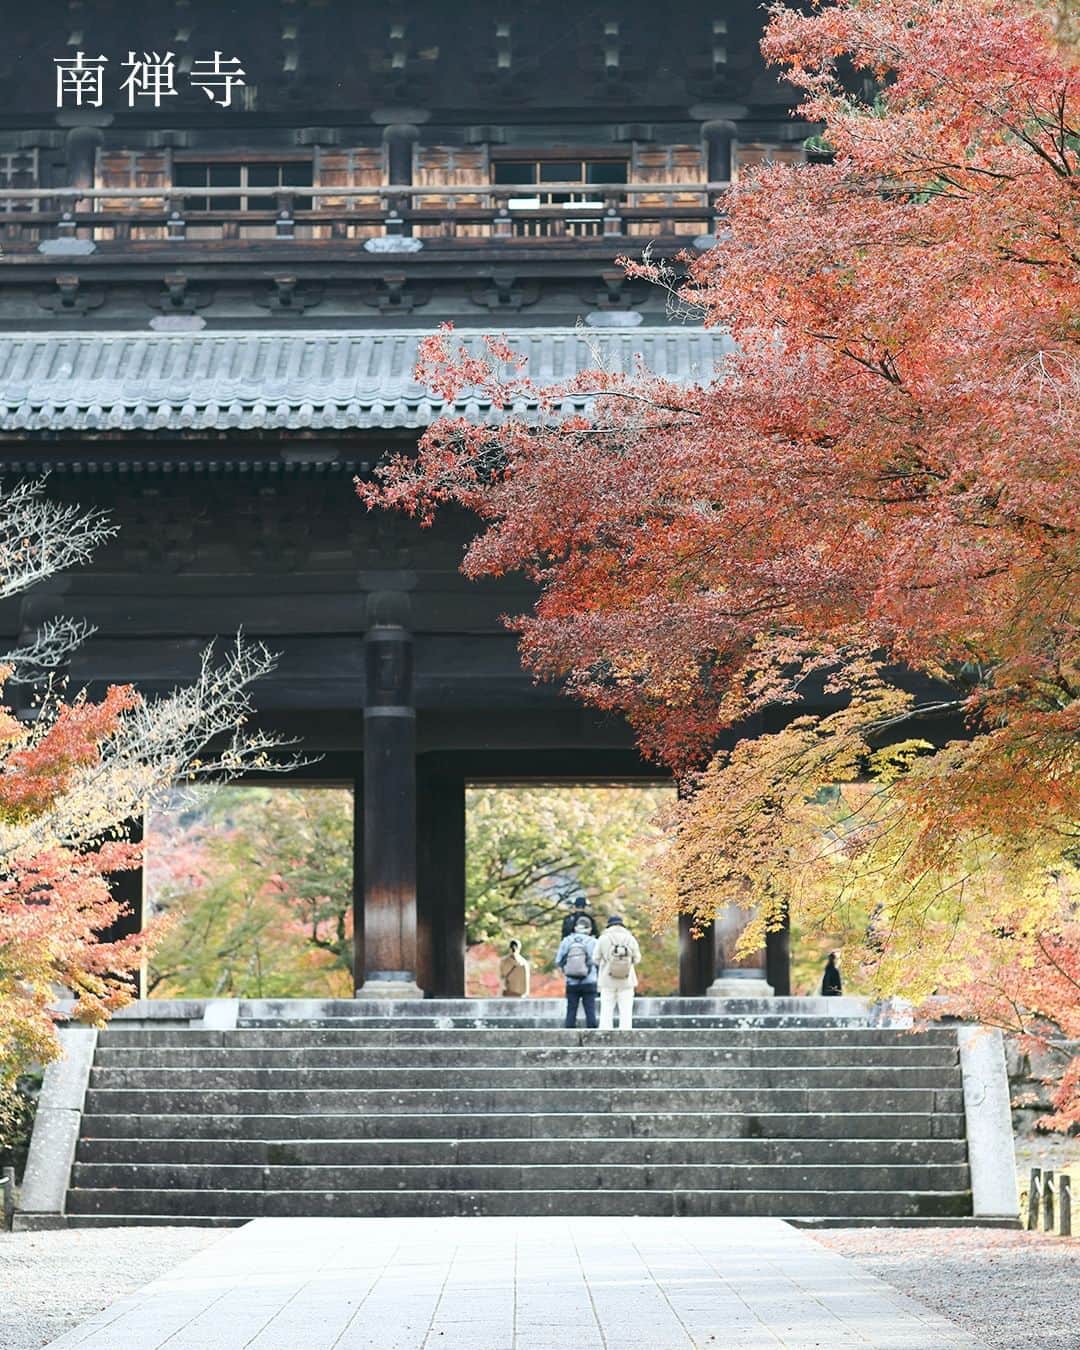 SOU・SOUのインスタグラム：「色鮮やかなカエデやモミジ、まさに「別格」の紅葉。京都東山の紅葉散歩♪ - - - - - - - - - - - - 秋も深まり、SOU・SOUのある京都も紅葉が各所で見頃を迎えています。 - そんな紅葉の名所がたくさんある京都から、東山エリアの南禅寺と永観堂を散歩してきました。この日も朝から向かったにもかかわらずたくさんの方が思い思いに紅葉を楽しんでいらっしゃいました。 - 南禅寺は京都市左京区にある禅寺です。京都五山(天竜寺・相国寺・建仁寺・東福寺・万寿寺)のさらに上に置かれる”別格扱い”の寺院。日本の全ての禅寺の中で最も高い格式を持つお寺です。 - 参道を歩き、南禅寺に足を踏み入れると、高さ22mを誇る大きな三門がまずはじめに目に飛び込んできます。こちらの三門は、重要文化財にも認定されています。 - お次の永観堂は浄土宗西山禅林寺派の総本山。本堂の阿弥陀如来像は、顔をななめ後ろに向けており「みかえり阿弥陀」と呼ばれています。東山の山肌に多宝塔があり、境内には放生（ほうじょう）池もあり、見事な借景を楽しめます。 - 楓におおわれた釈迦堂や開山堂などの諸堂は回廊で結ばれ、紅葉も至るところで見ることができます。真っ赤に色づいた場所や、まだ緑が初々しいところも、さまざまな自然の彩りを楽しむことができました。 - - - #sousou #sousoukyoto #shrine #kyoto #京都 #そうだ京都行こう #神社仏閣 #期間限定 #秋 #風物詩 #秋の風景 #京都旅 #京都のくらし #日々の暮らし #紅葉 #紅葉 #観光 #京都散歩 #京都観光 #南禅寺 #南禅寺 #紅葉狩り #南禅寺三門 #紅葉 #autumn #秋の京都 #京都散策 #京都紅葉 #京都観光 #秋を楽しもう」